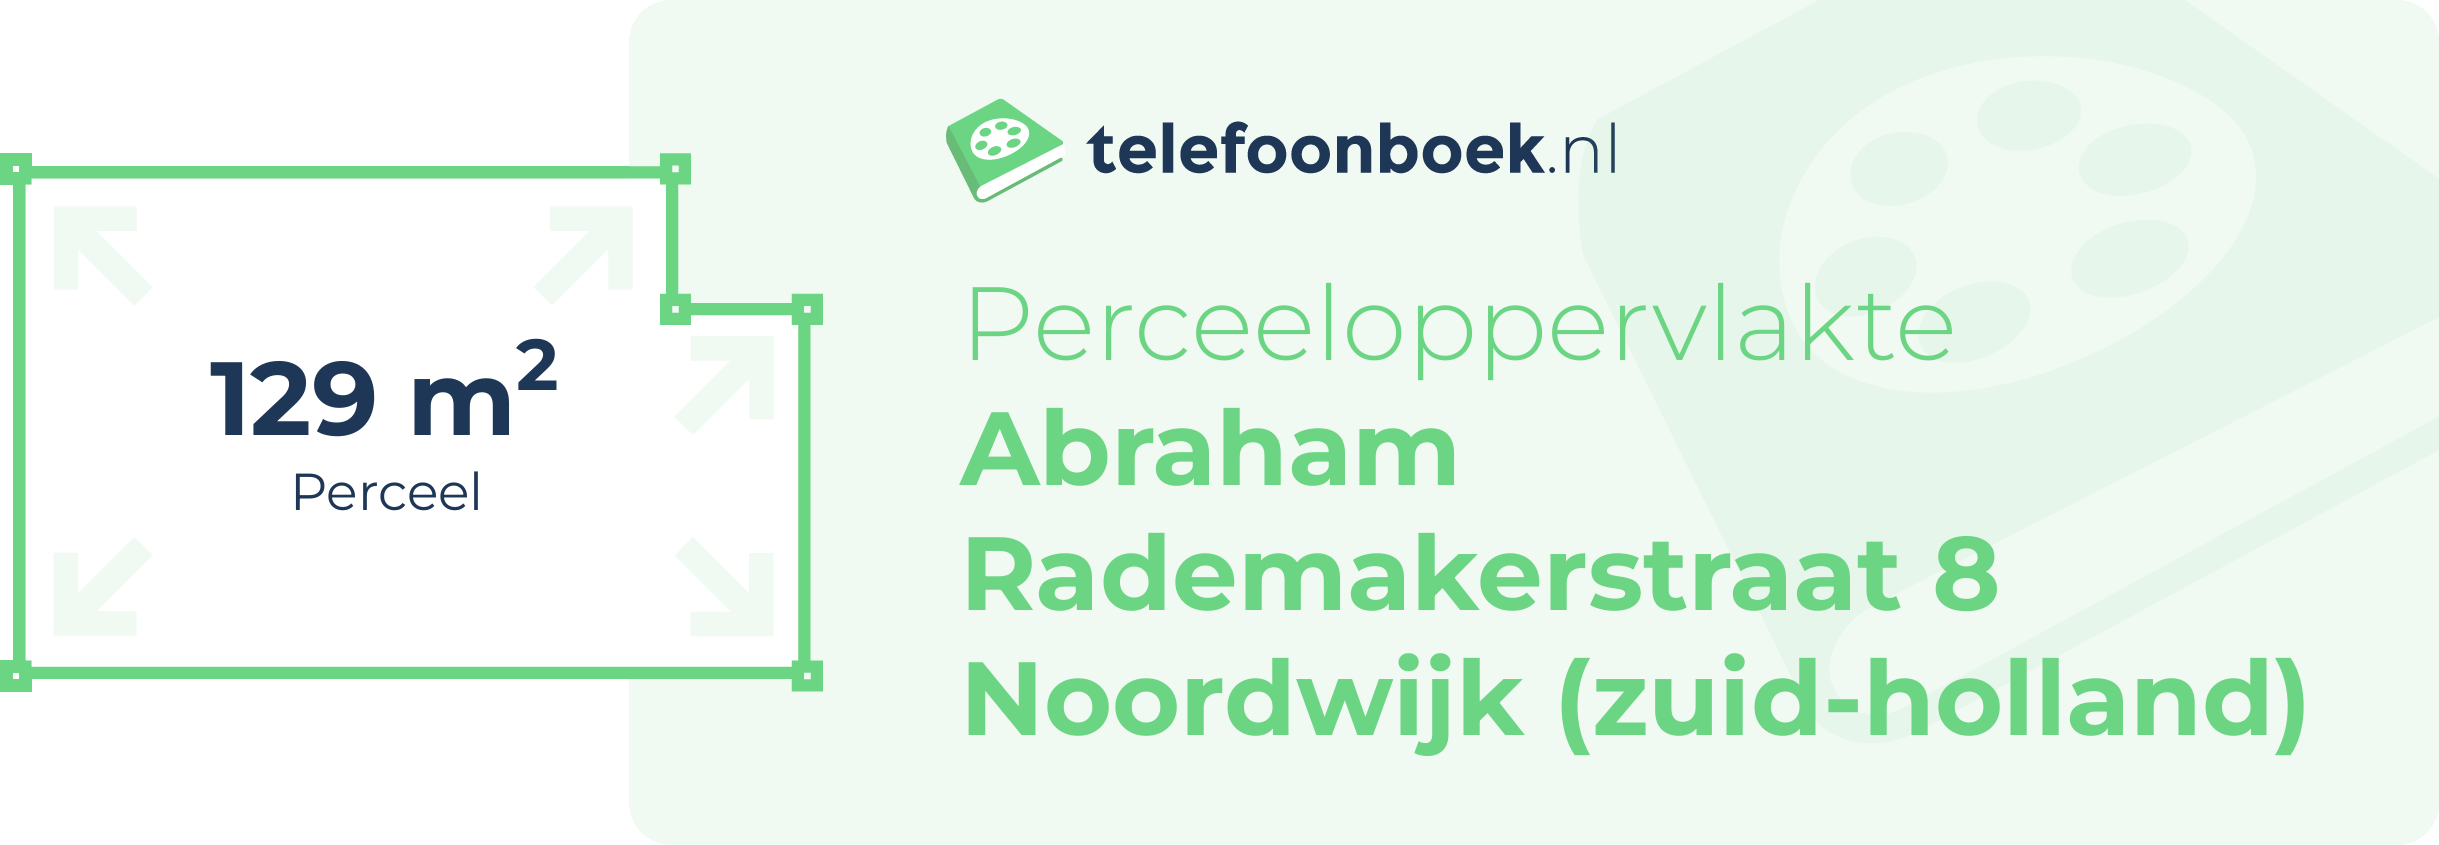 Perceeloppervlakte Abraham Rademakerstraat 8 Noordwijk (Zuid-Holland)